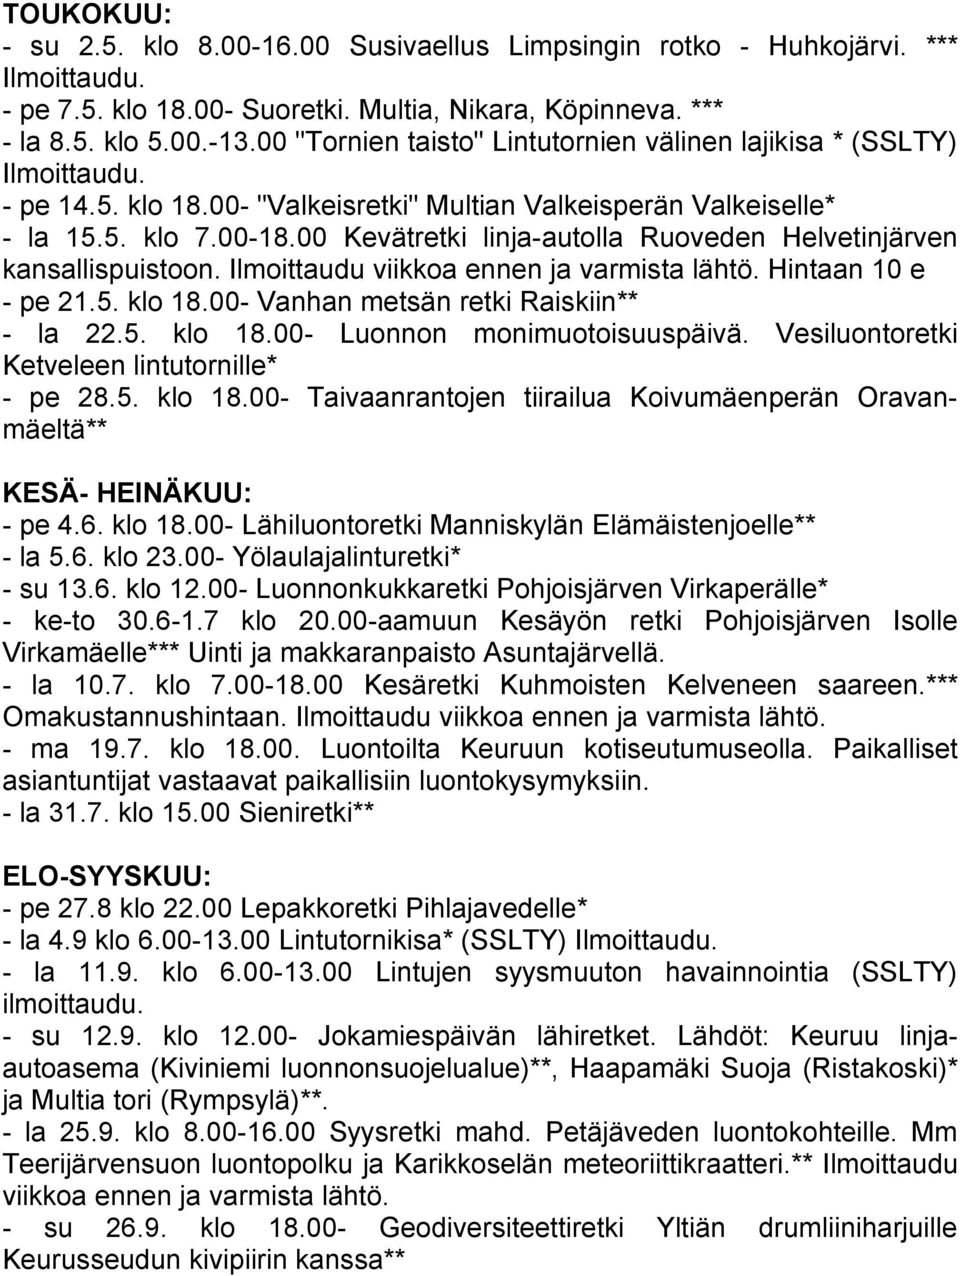 00 Kevätretki linja-autolla Ruoveden Helvetinjärven kansallispuistoon. Ilmoittaudu viikkoa ennen ja varmista lähtö. Hintaan 10 e - pe 21.5. klo 18.00- Vanhan metsän retki Raiskiin** - la 22.5. klo 18.00- Luonnon monimuotoisuuspäivä.